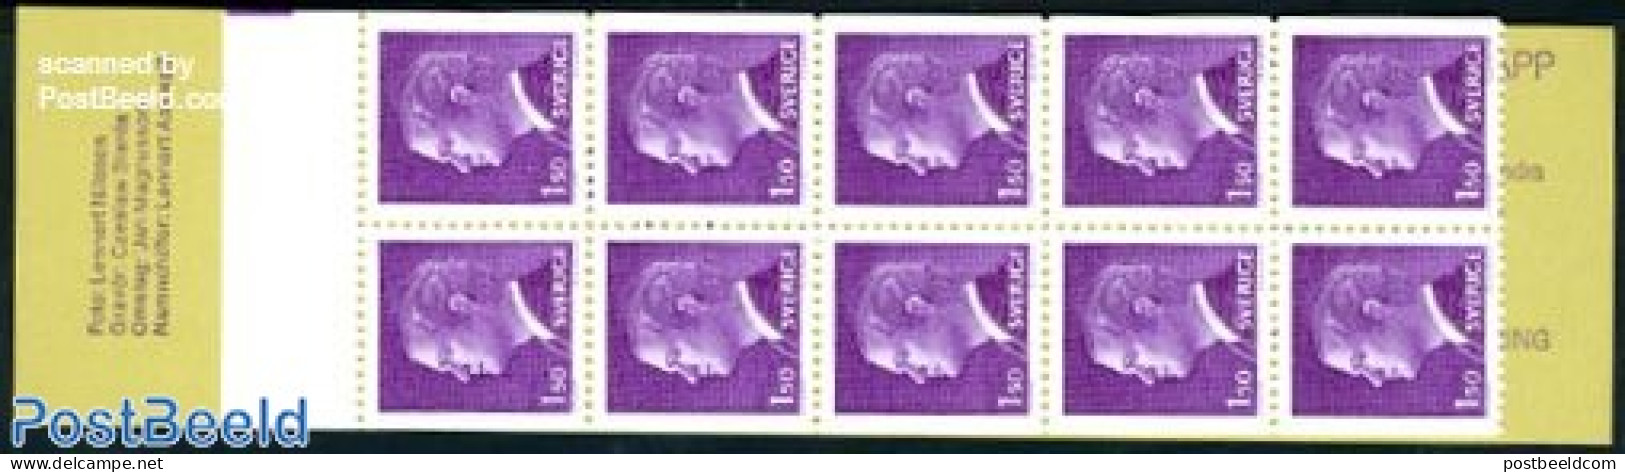 Sweden 1980 Definitives Booklet, Mint NH, Stamp Booklets - Unused Stamps